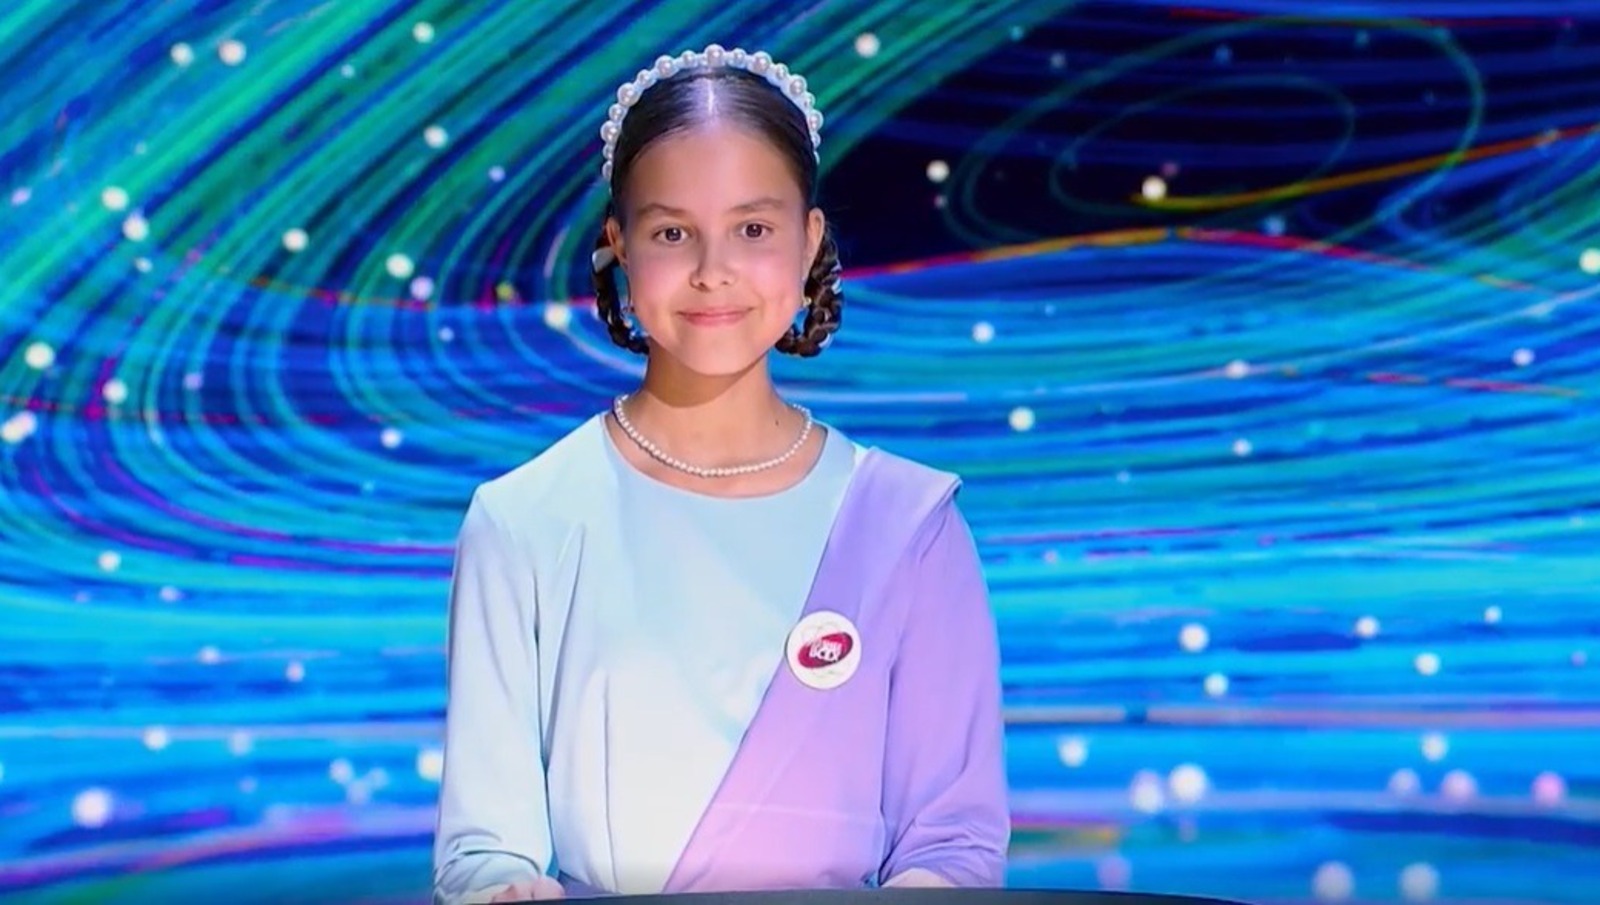 Юная жительница Башкирии стала участницей интеллектуального шоу «Умнее всех»